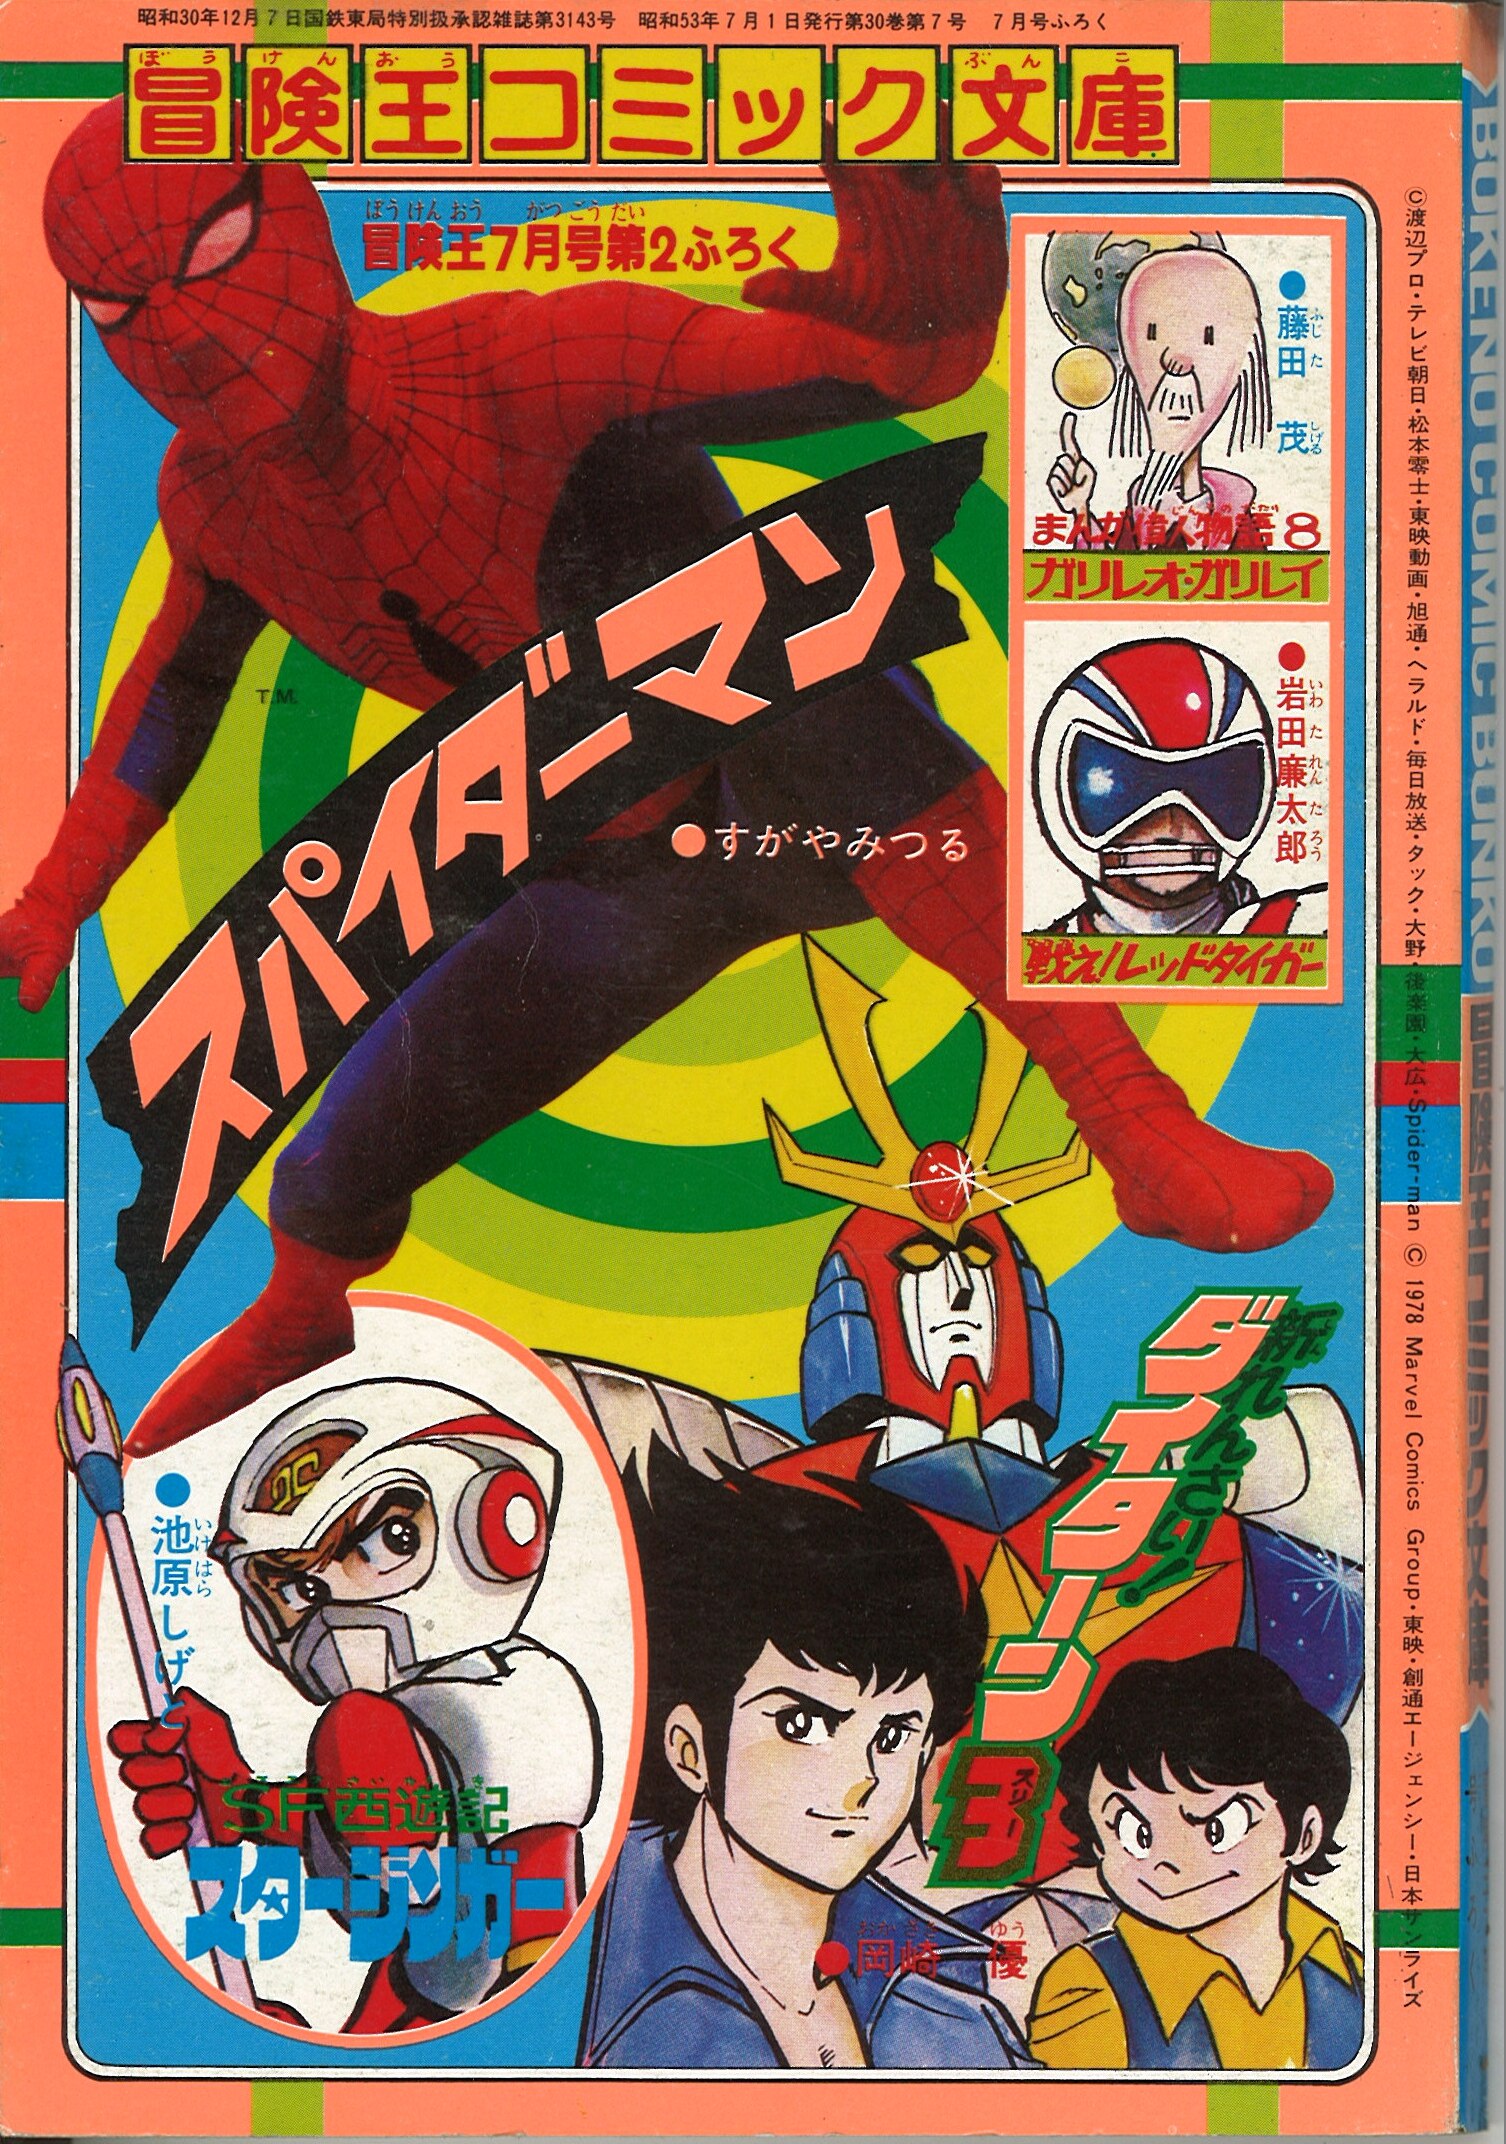 1978年(昭和53年)7月号第2付録 冒険王コミック文庫 スパイダーマン/す